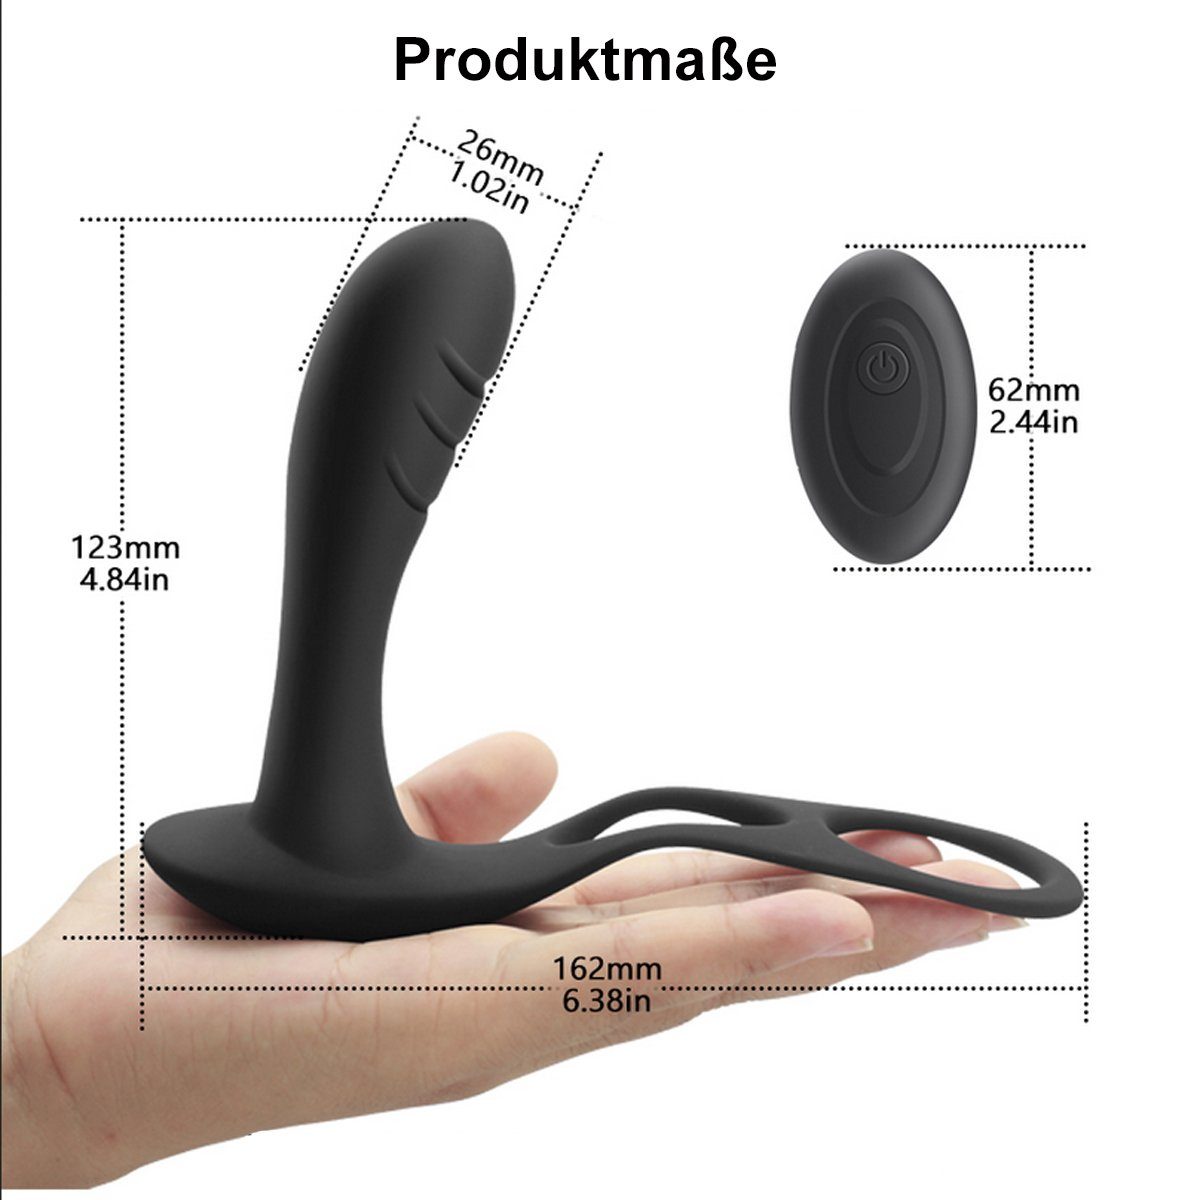 Schwarz Männer Remote mit - Analvibrator verschiedene ergonomischer Fernbedienung Anal wiederaufladbar), USB über Prostata mit Control Anal und Vibrationsmodi, Penisring Hodenring, für Vibrator (10 TPFSecret Vibrator